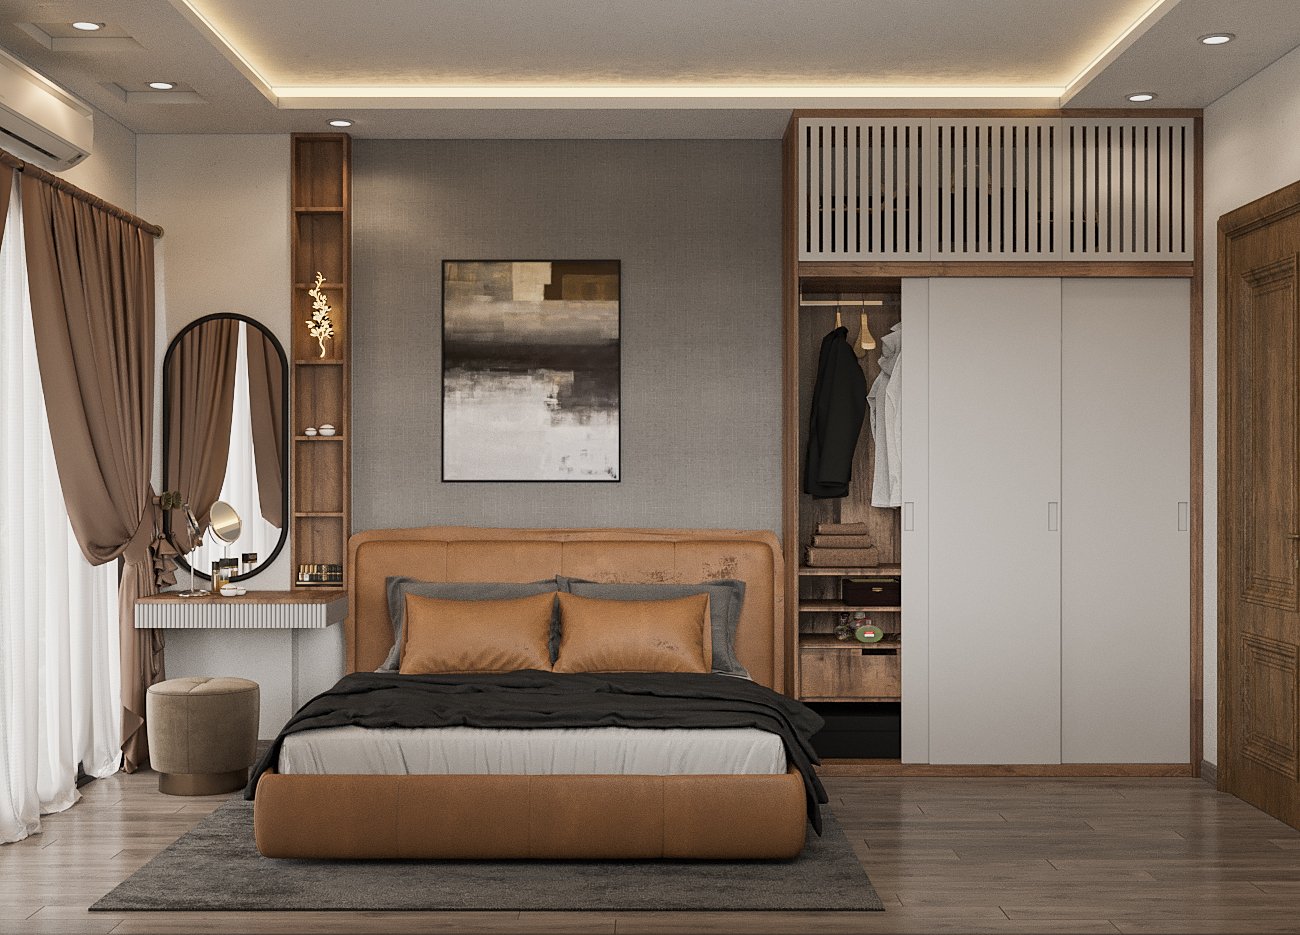 Phòng ngủ master trong nhà phố 4 tầng phong cách hiện đại sử dụng nội thất cao cấp với gam màu trung tính trang nhã, hài hòa.